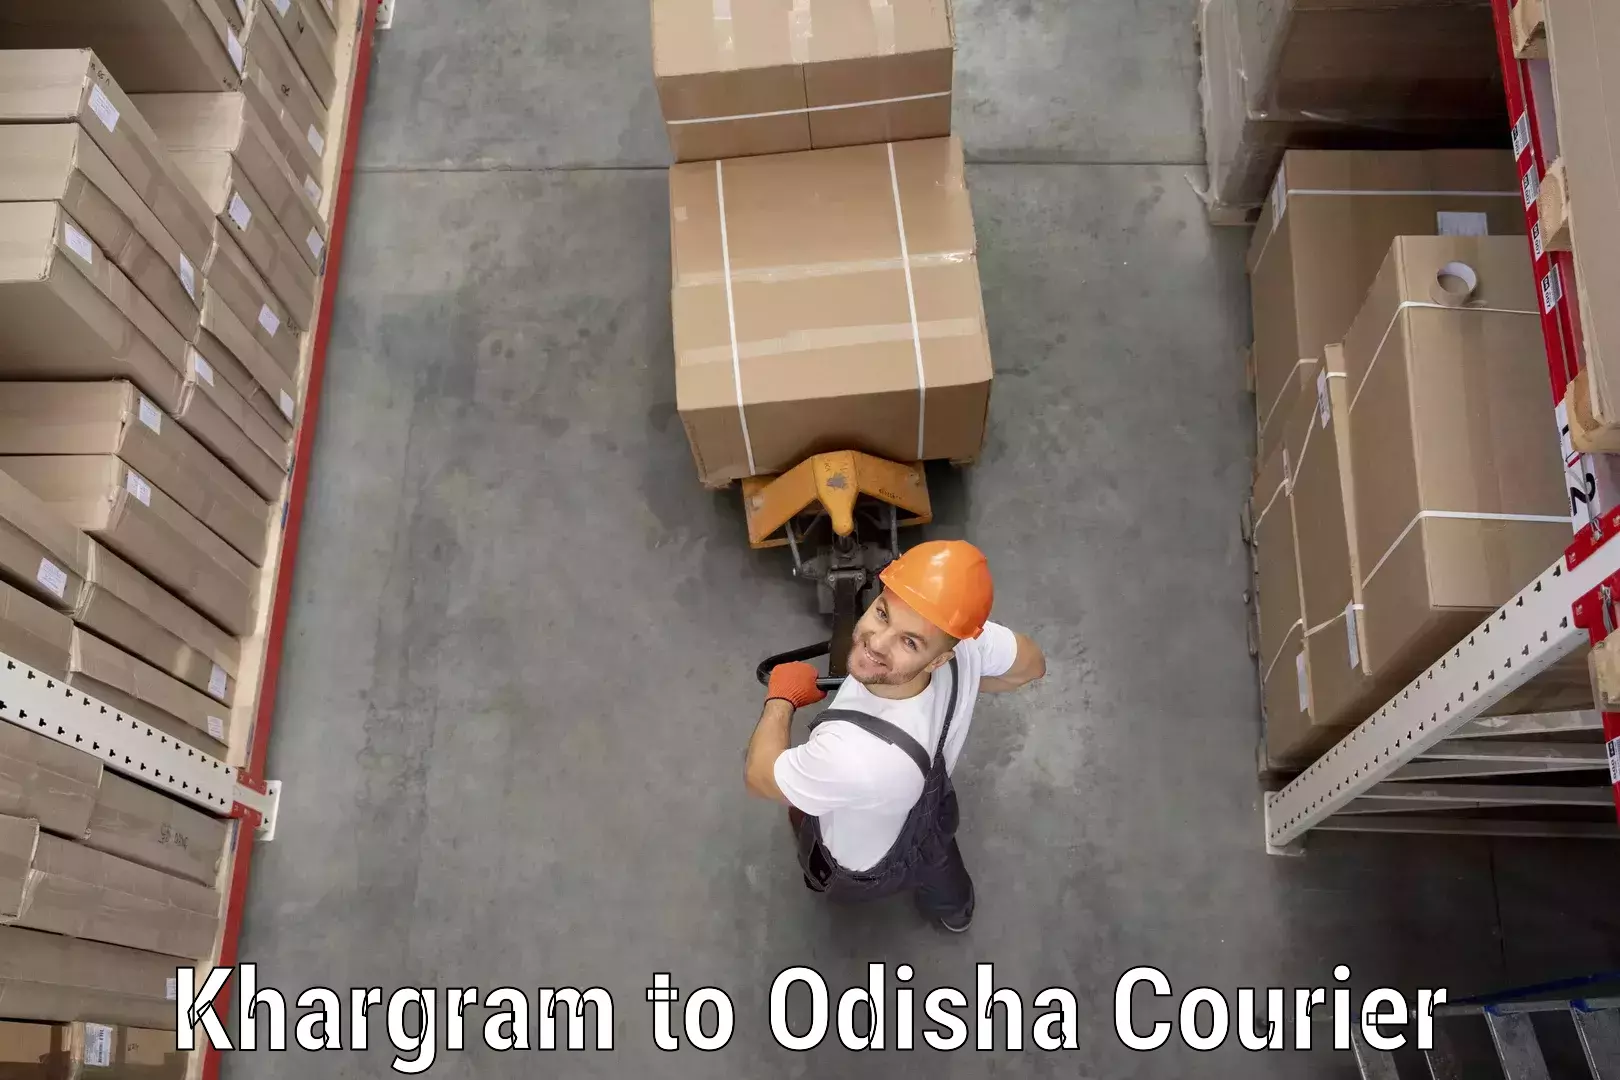 Full-service courier options Khargram to Dukura